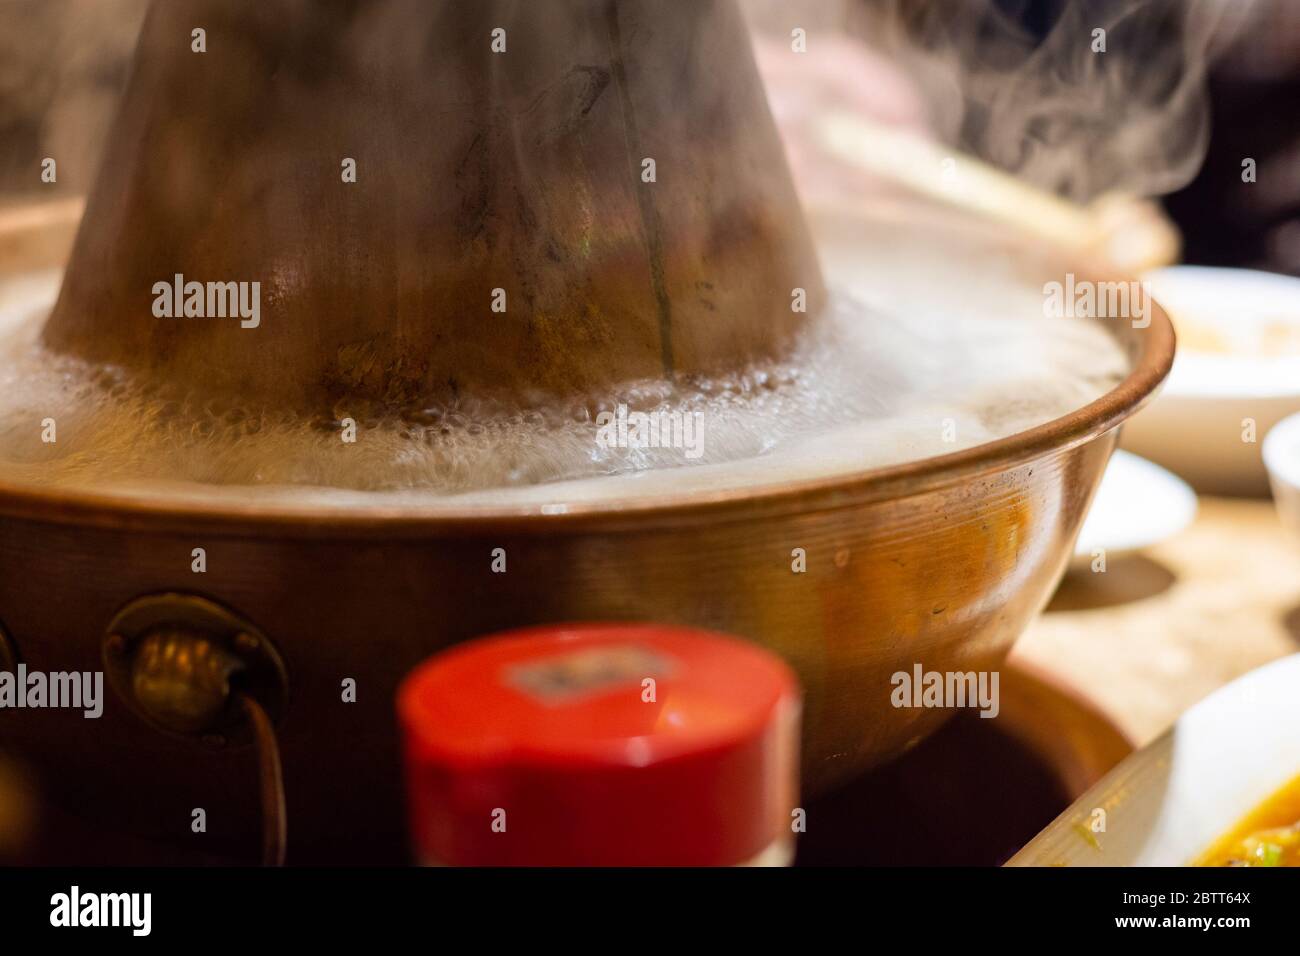 Tradizionale Beijing stile cinese carbone-riscaldato pentola con una ciambella di ottone a forma di ciambella. Posto al centro del tavolo da pranzo, ingredienti freschi e crudi Foto Stock